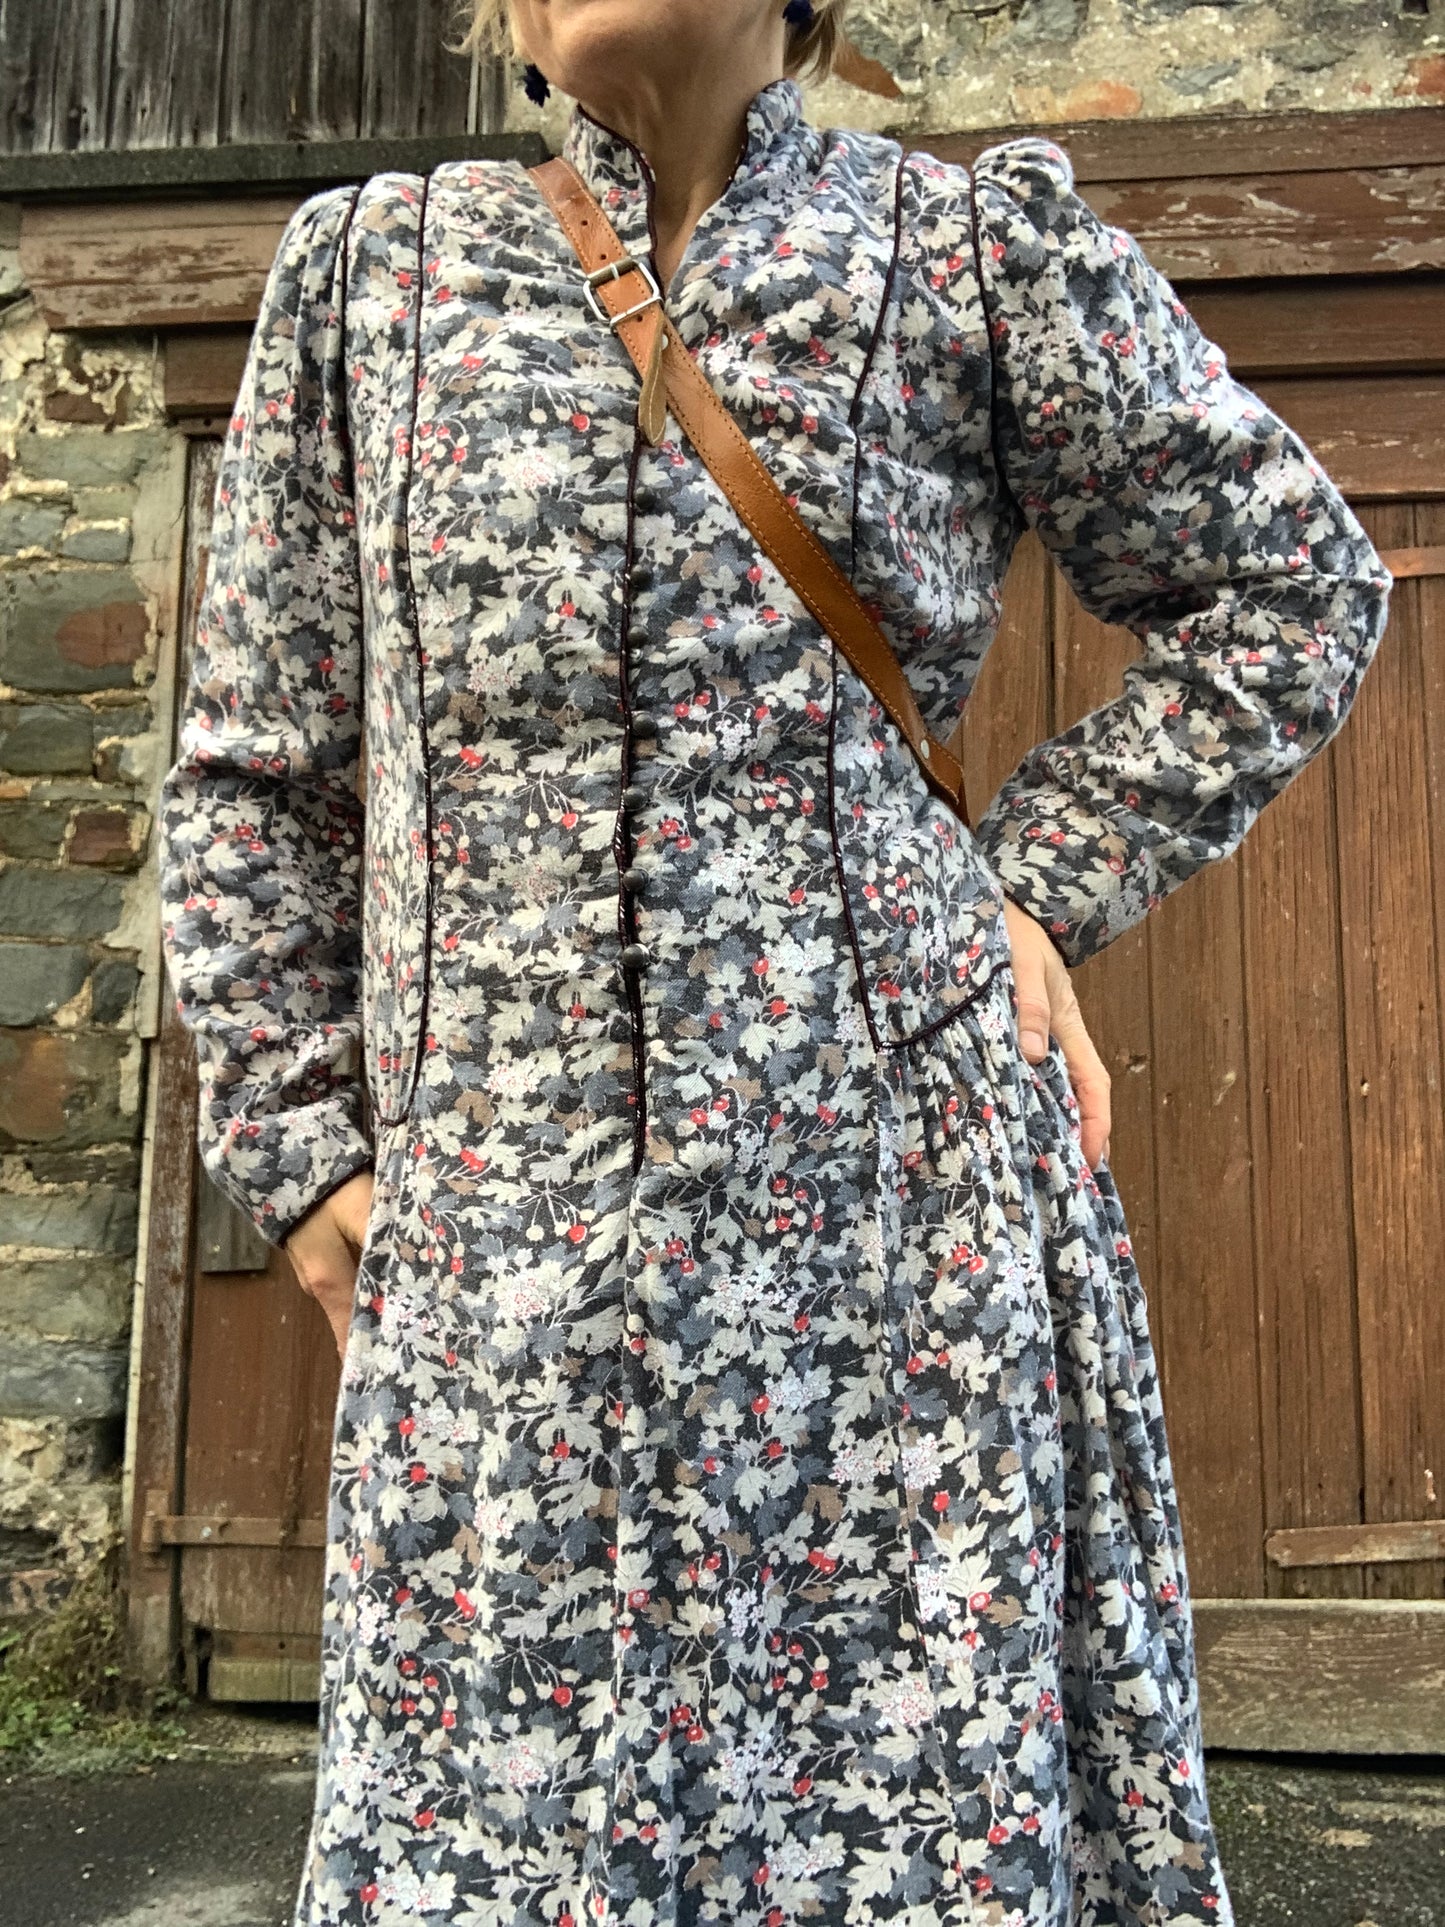 Vintage 1980’s prairie style dress by Origin